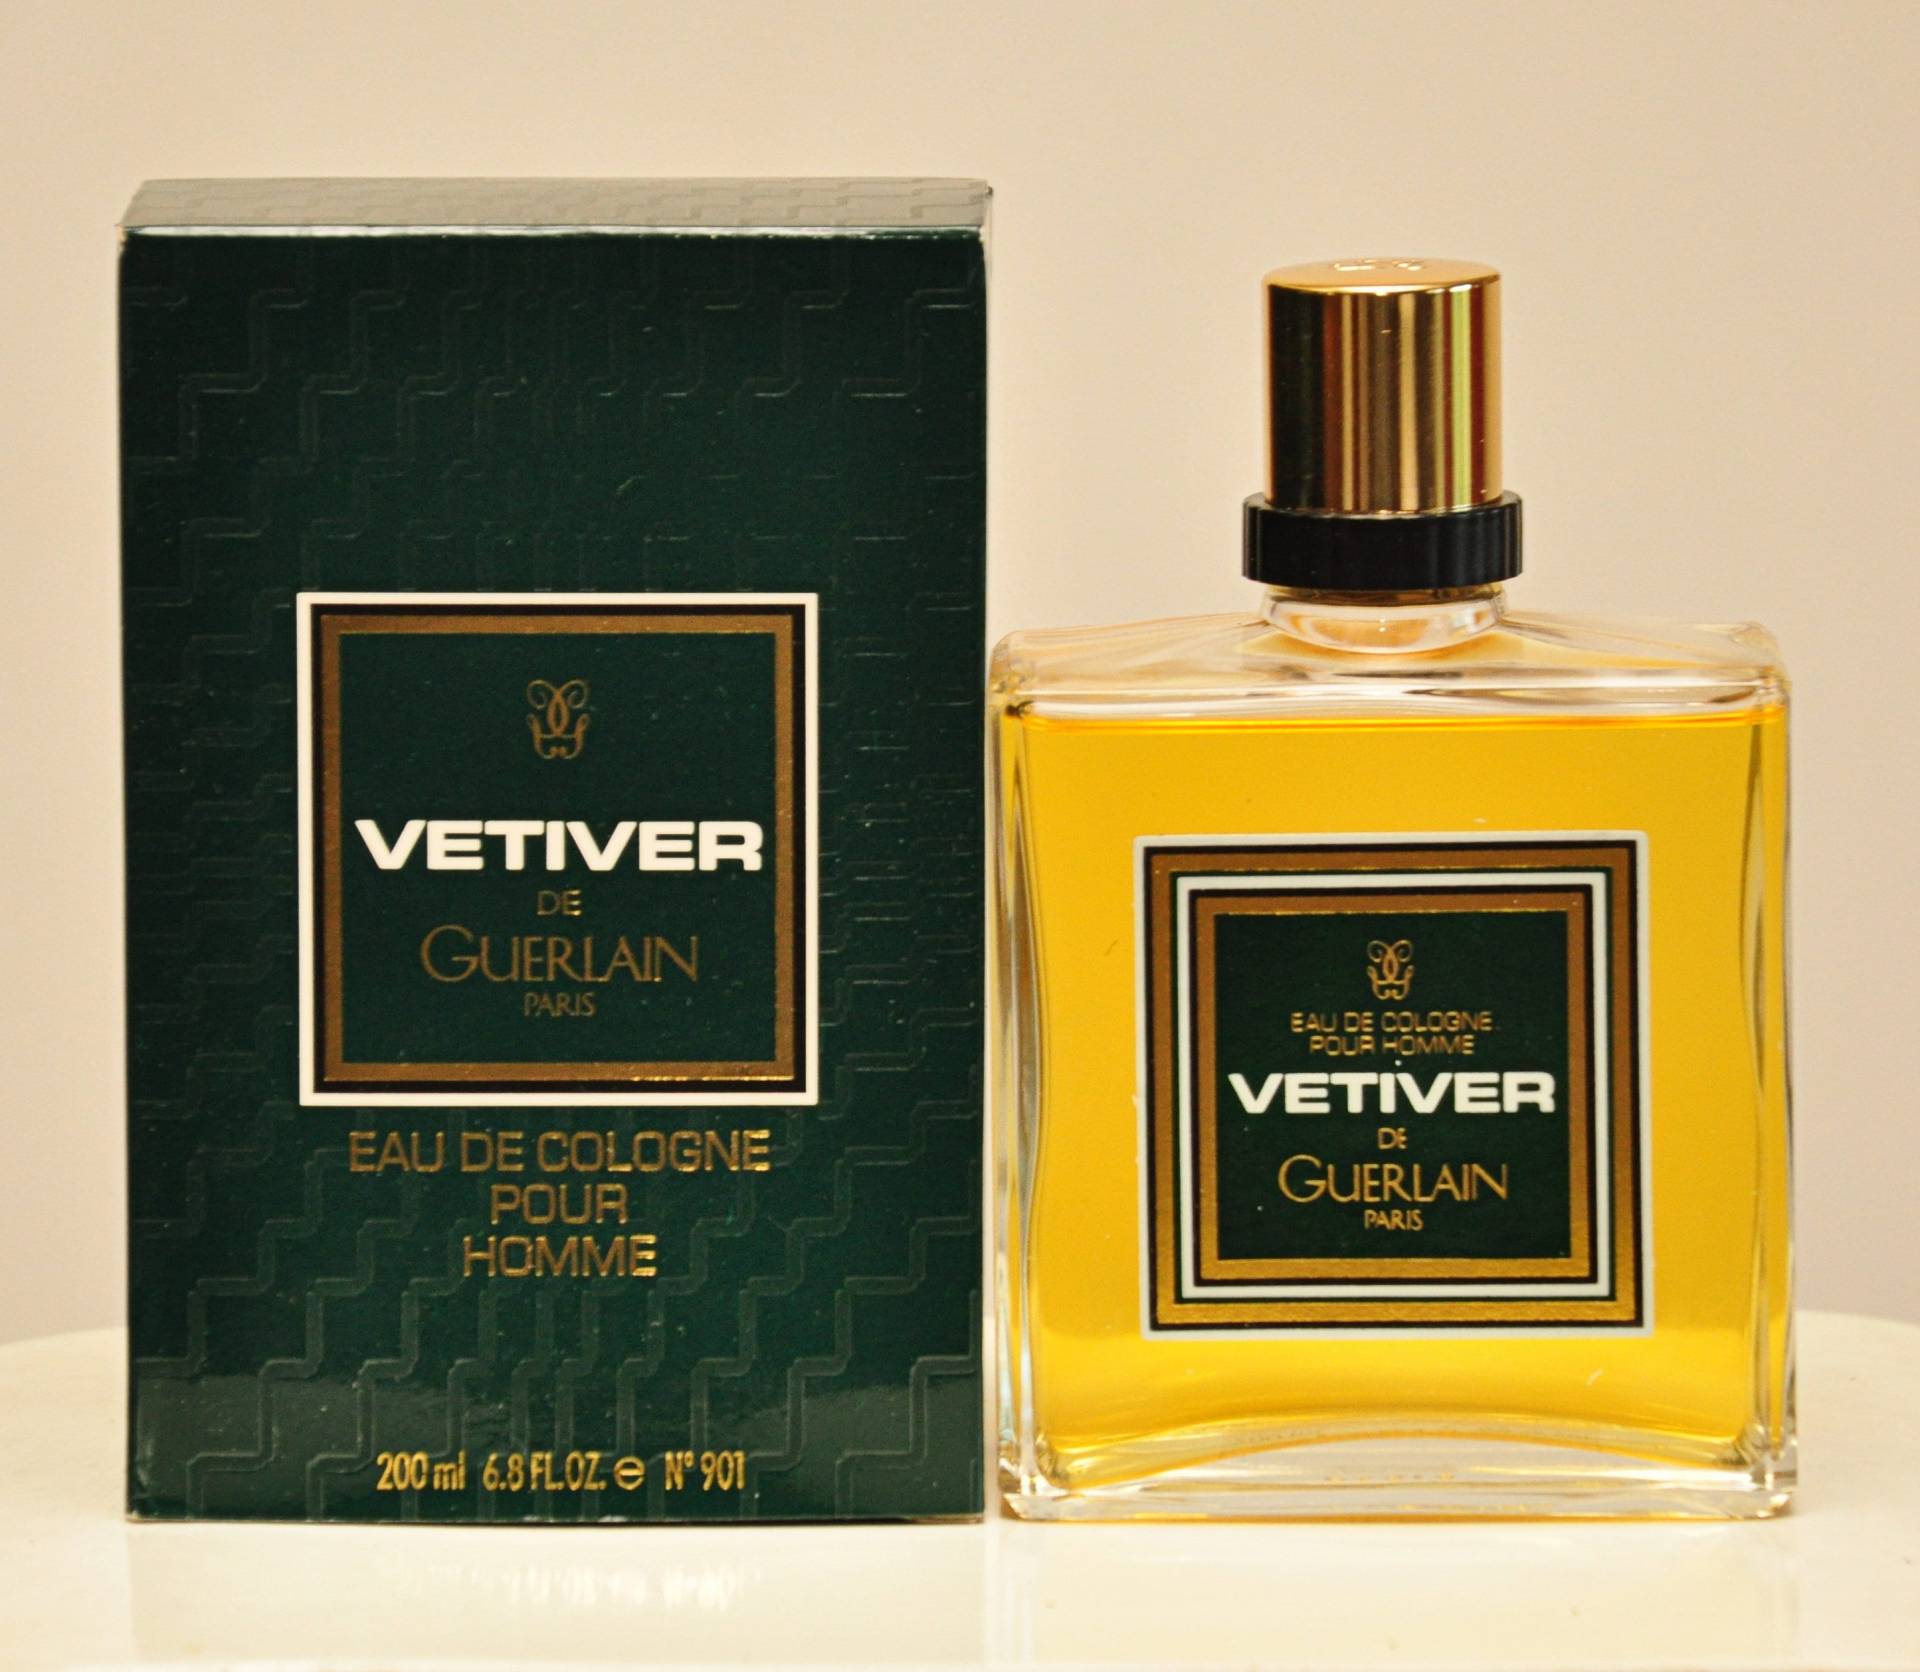 Guerlain Vetiver De Eau Cologne Pour Homme Eoc 200Ml Splash Non Spray Perfume Man Very Rare Vintage 1959 Version 1992 von YourVintagePerfume